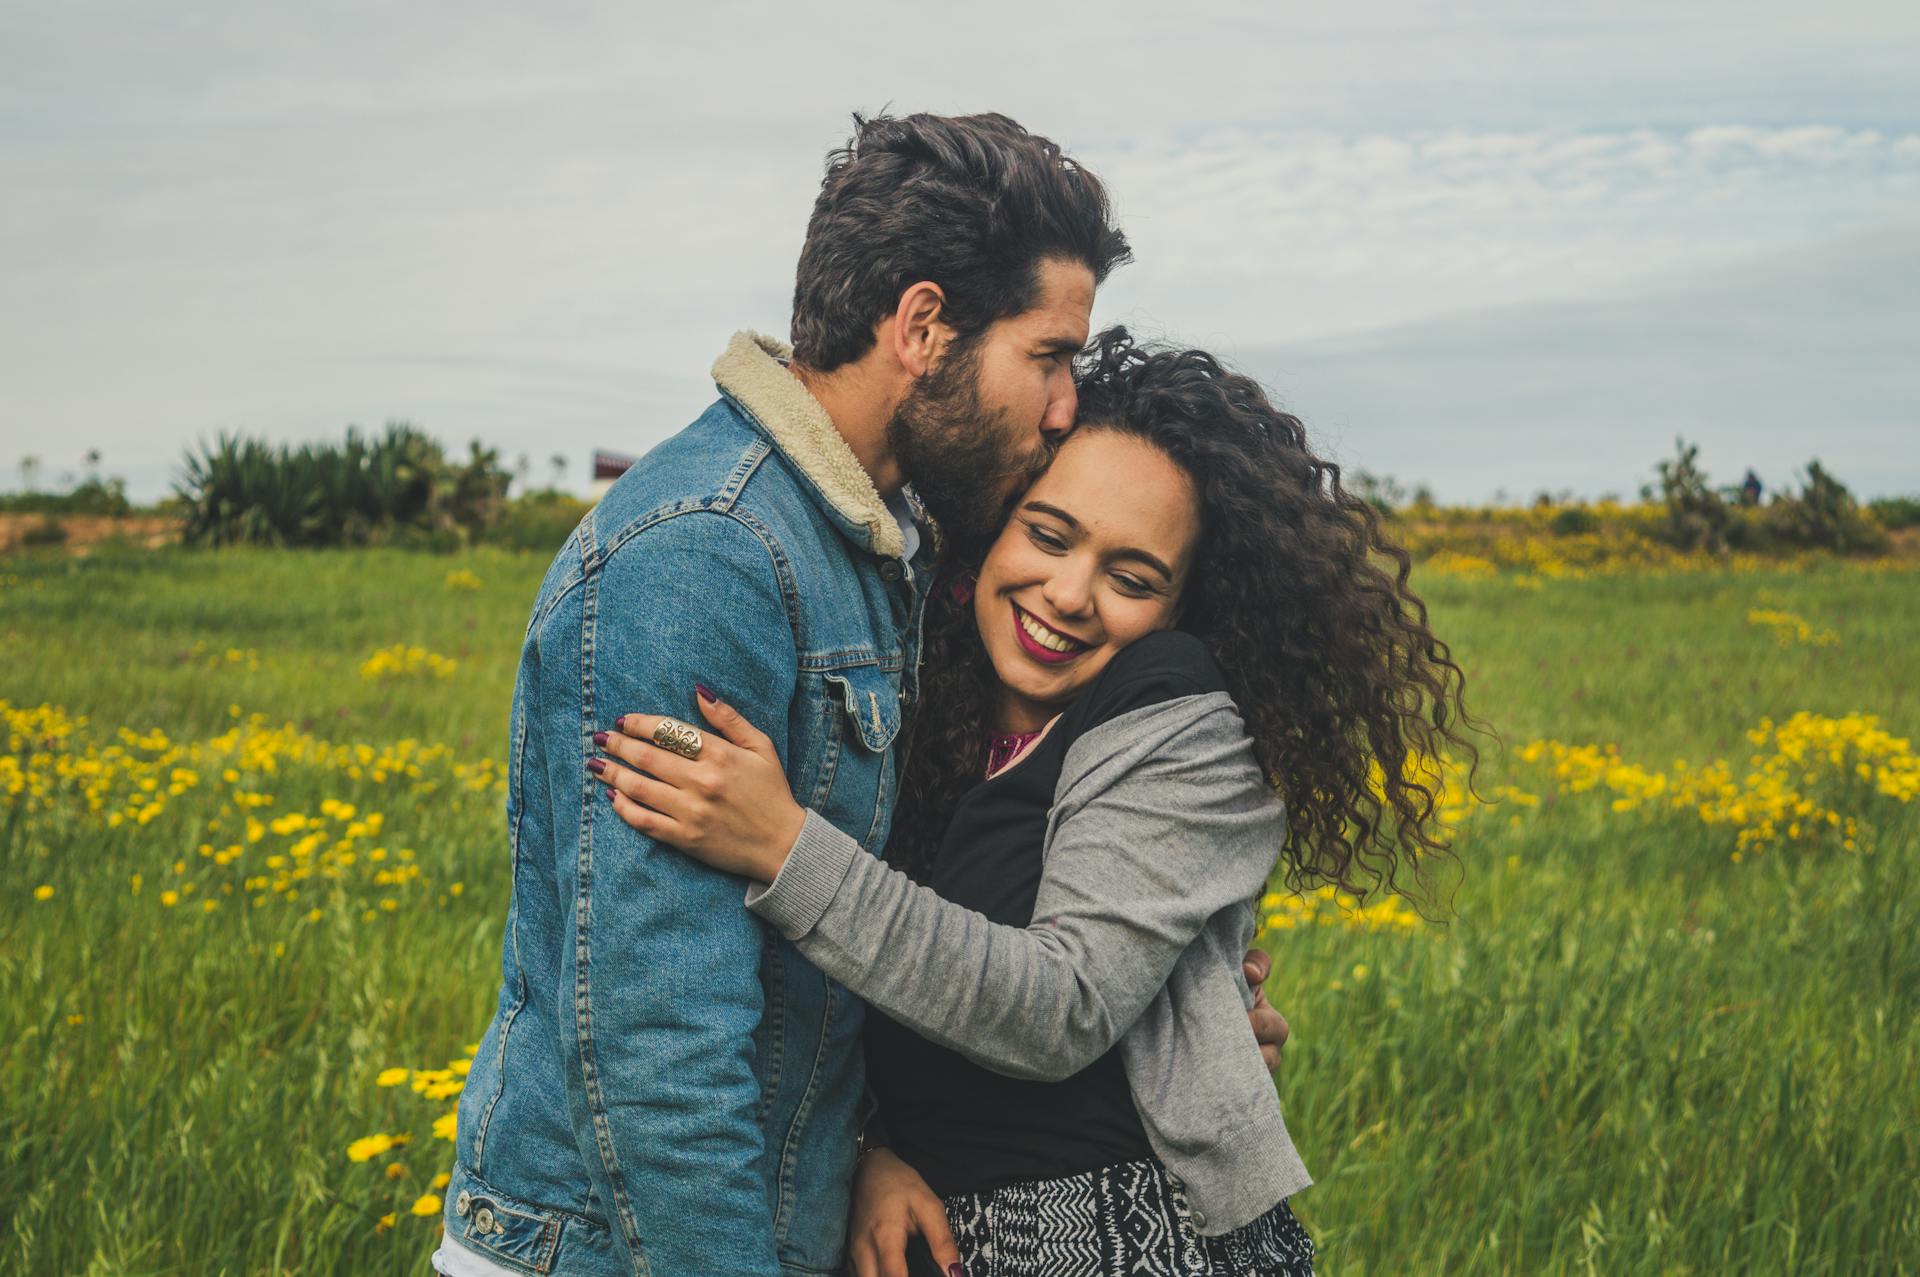 Ein junges Paar lächelt auf einem Feld | Quelle: Pexels